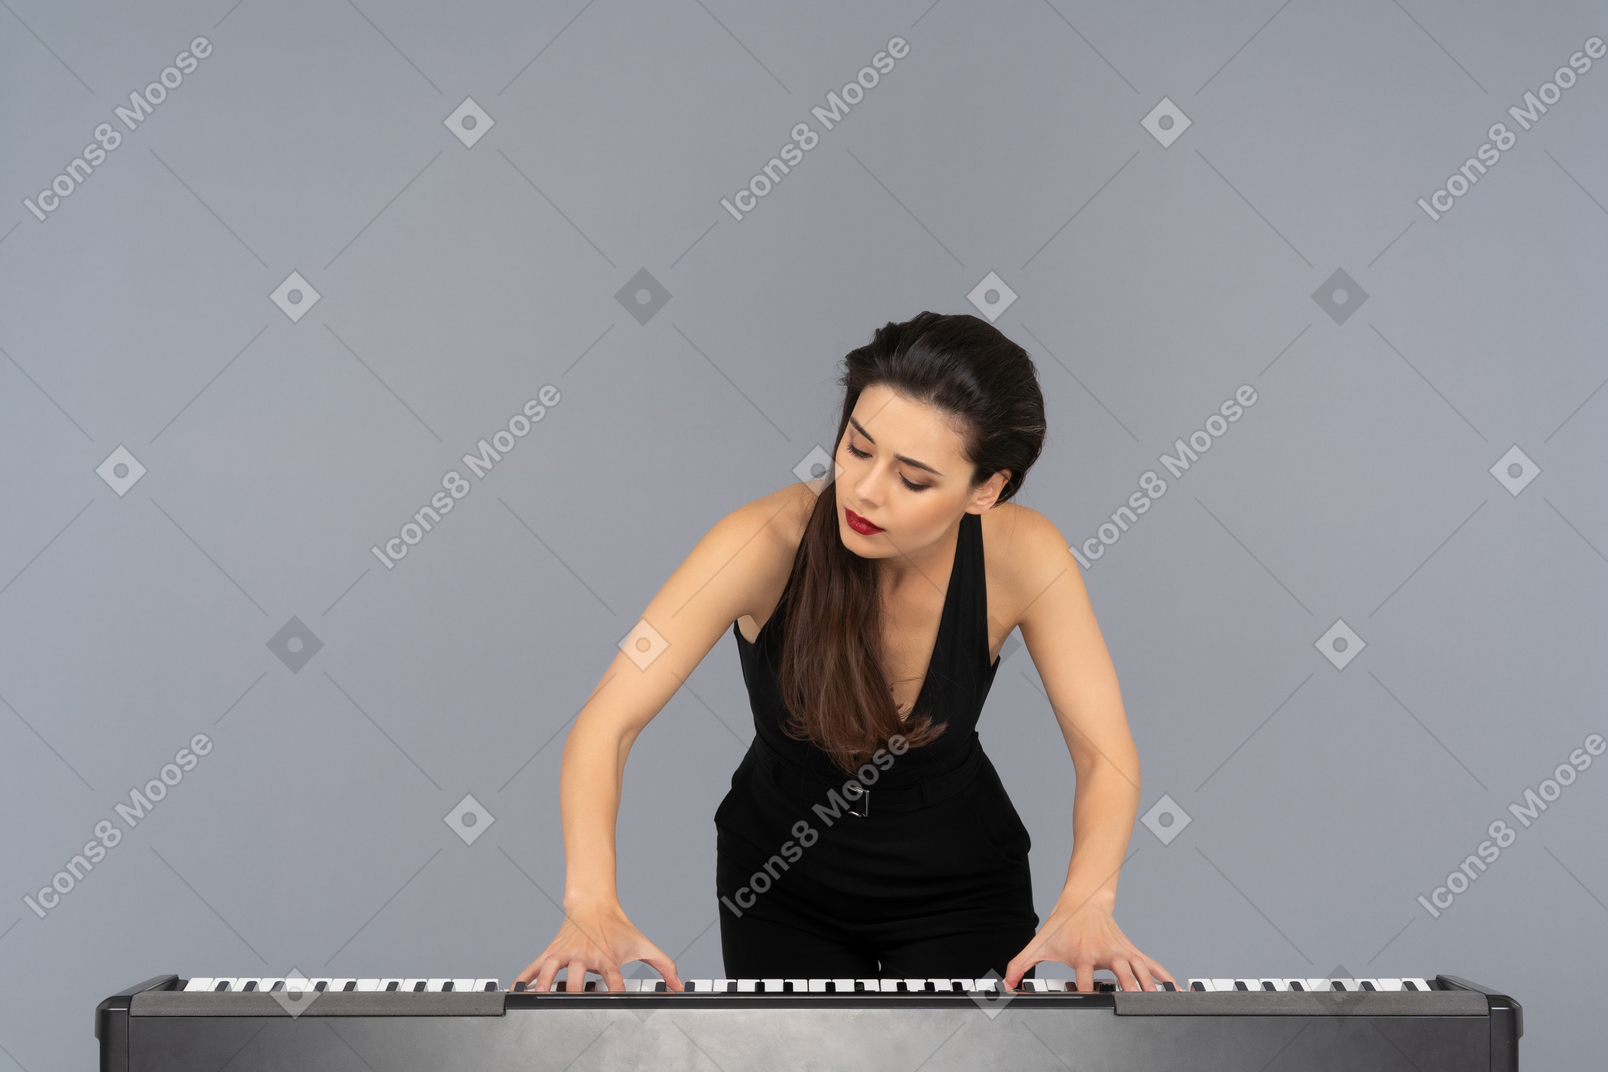 Giovane donna che suona con passione un pianoforte